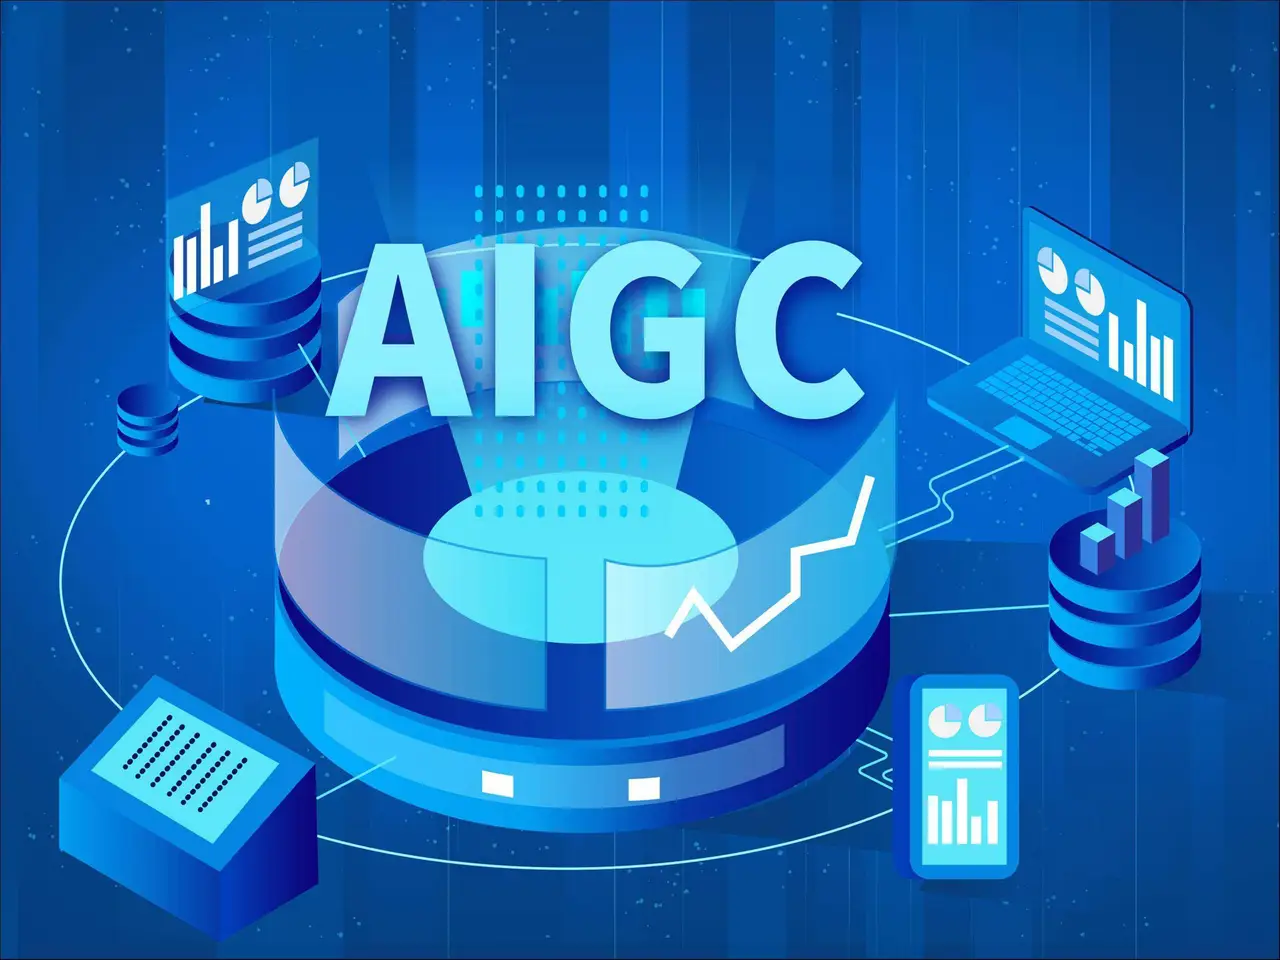 这是一张展示人工智能和生成内容（AIGC）的概念图，包含图标、数据图表、电脑和算法符号，色调为蓝色科技风。